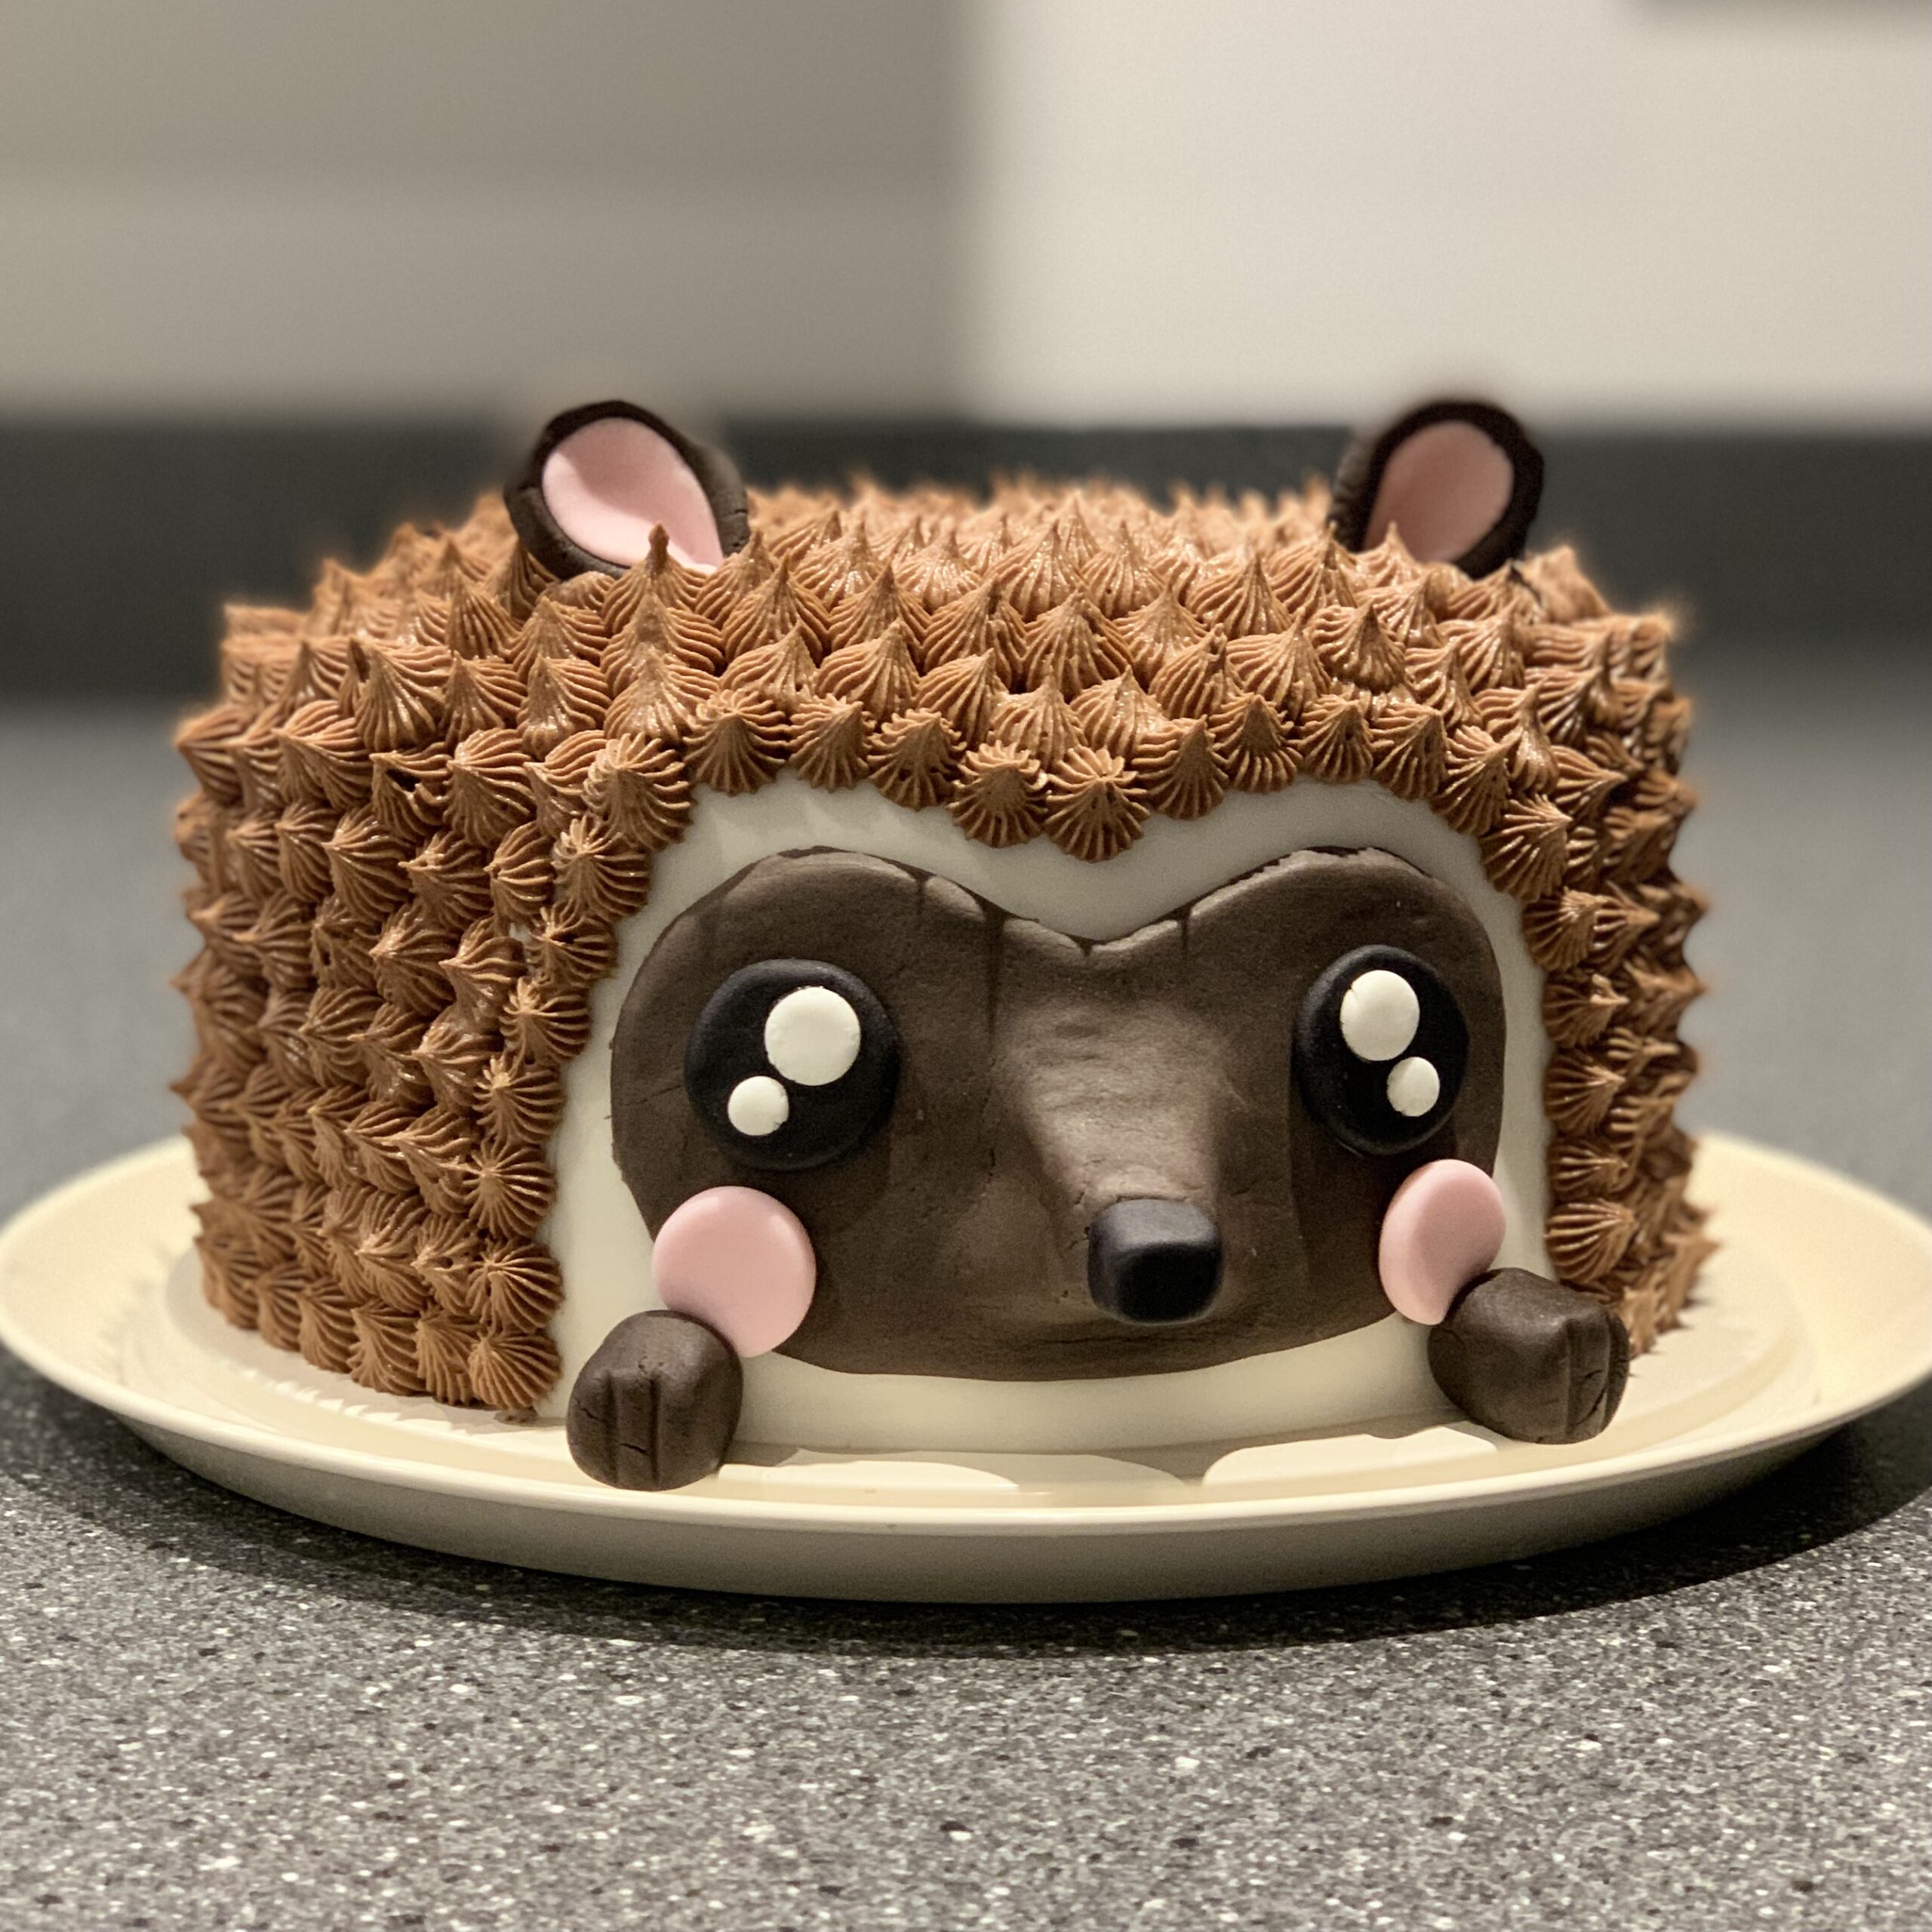 Chocolate Hedgehog Cake Recipe | Easy Cake Recipe | Betty Crocker